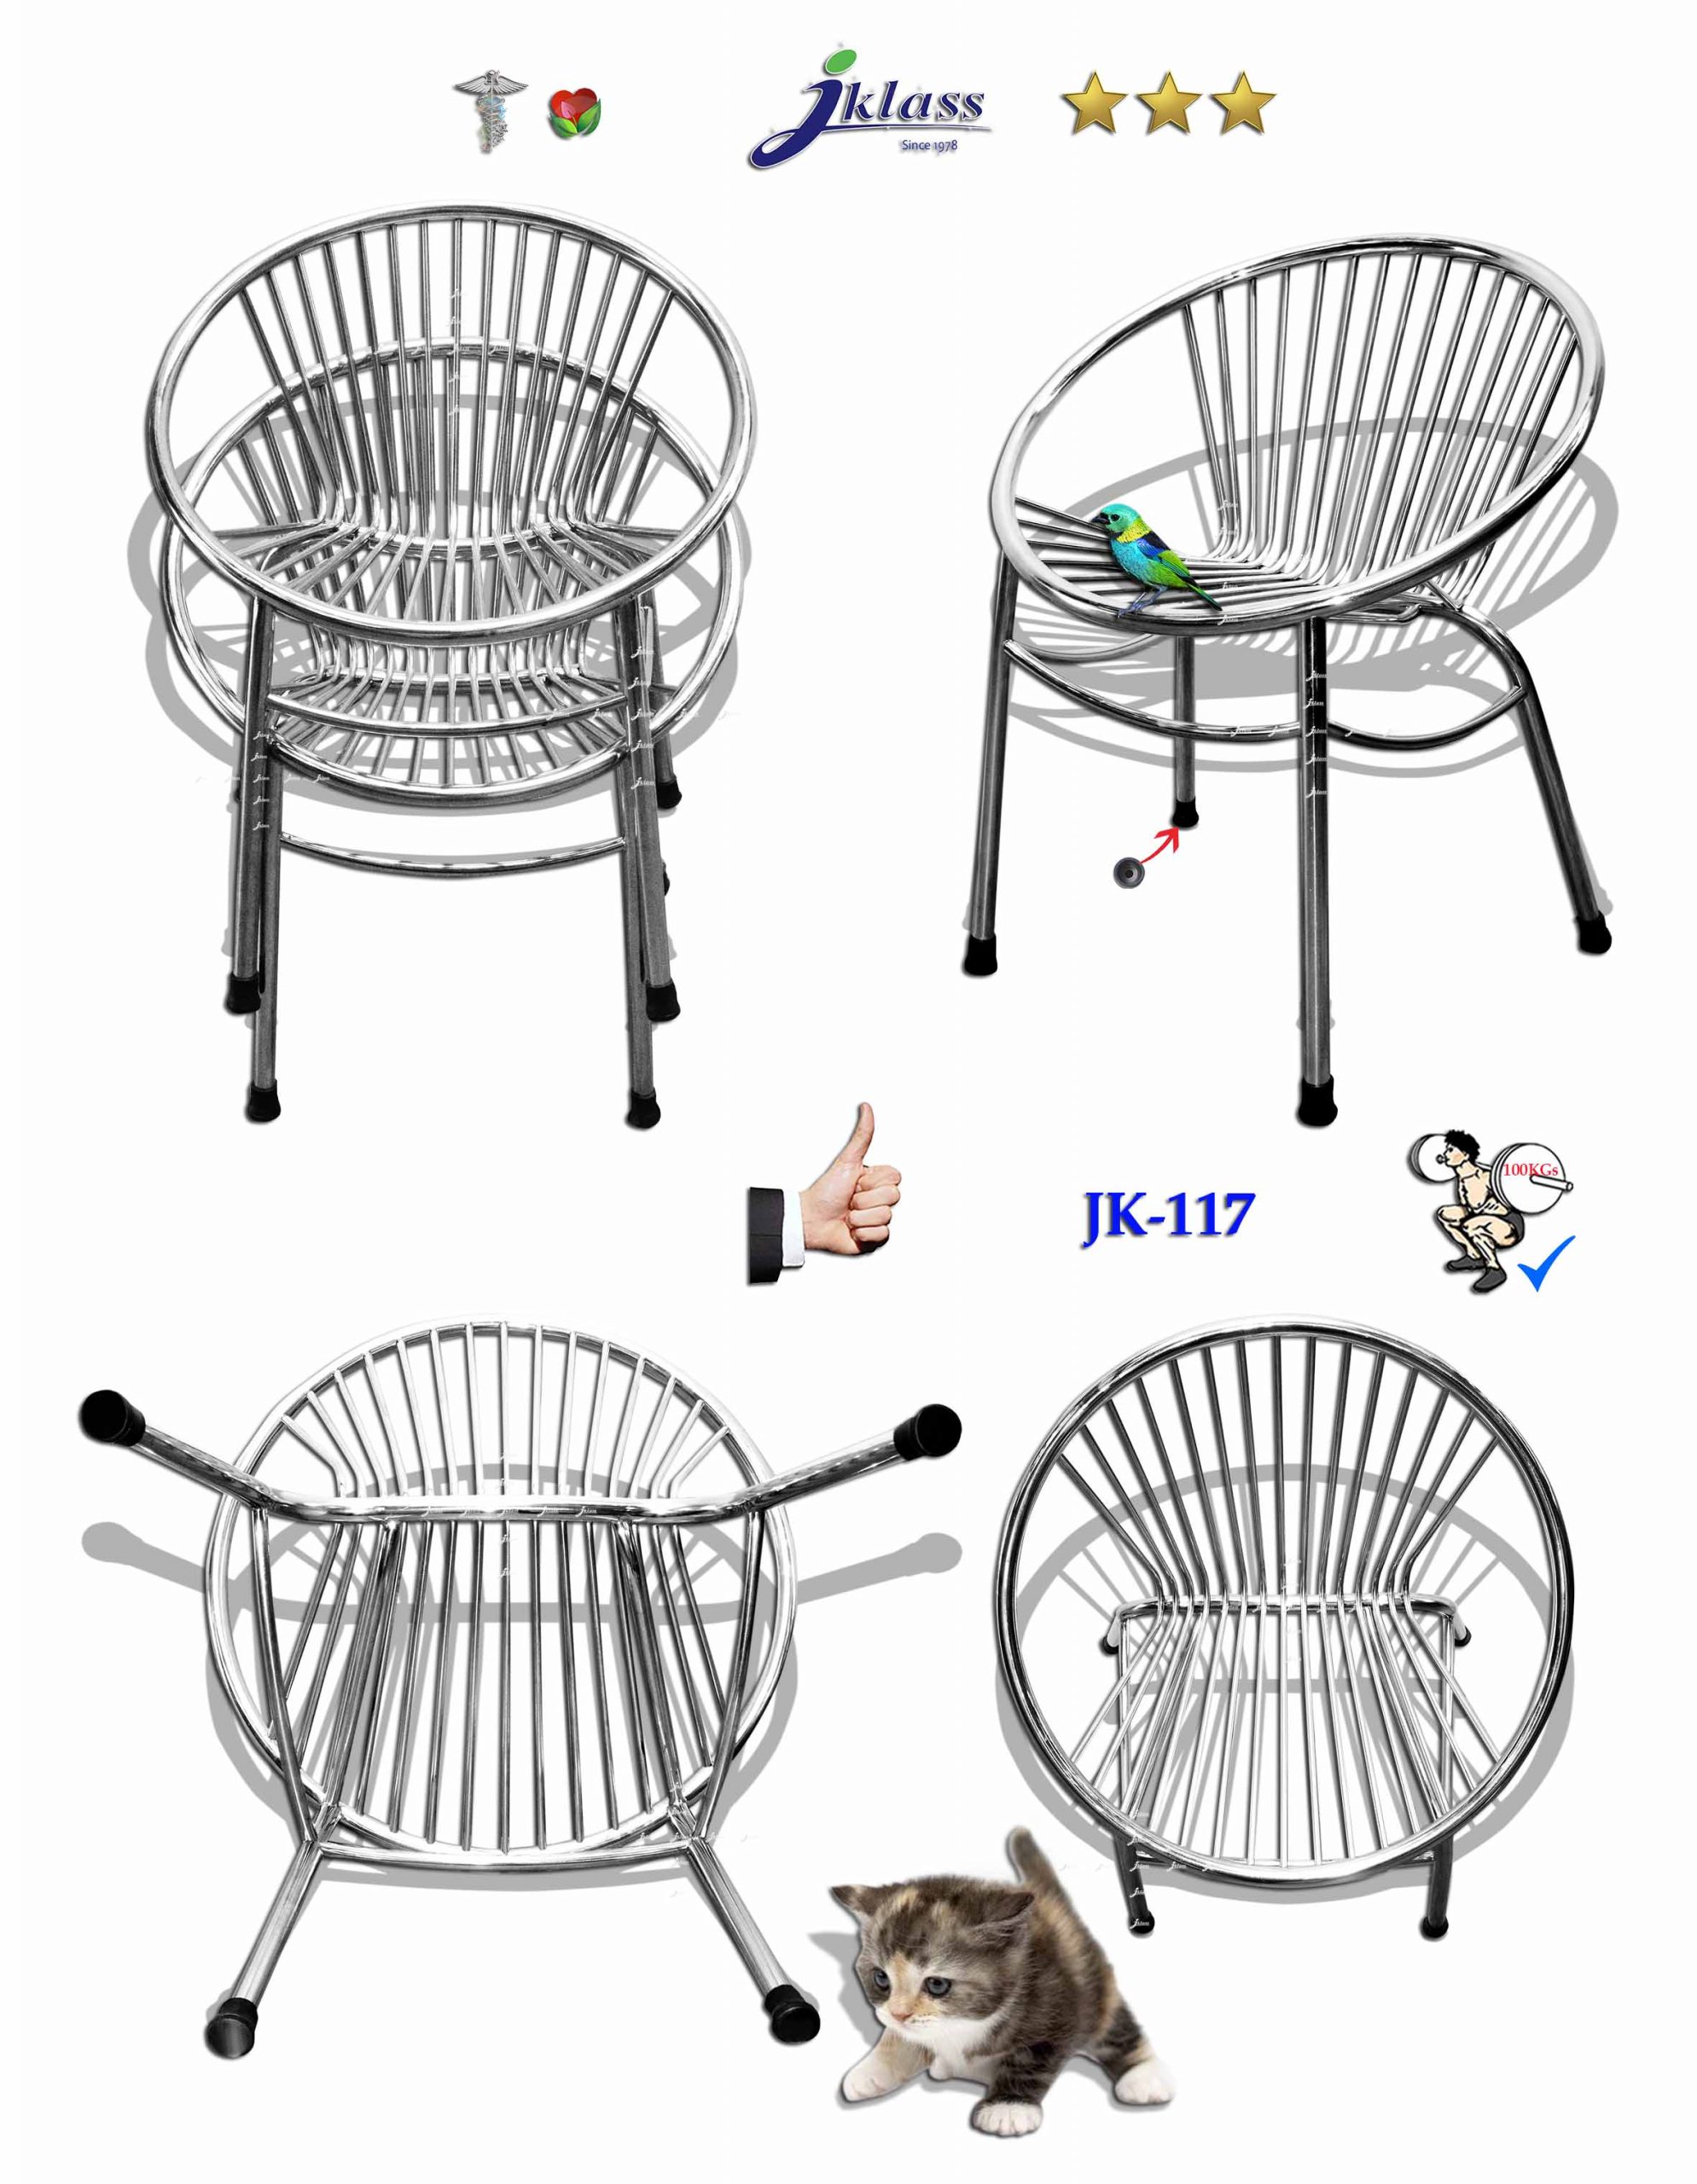 90010::JK-117::เก้าอี้สแตนเลสทรงหอยแครง (Cockle Chair) ขนาด ก570Xล650Xส450-780 มม. เก้าอี้รับแขกออกแบบพิเศษรูปหอย ขาท่อขนาด 25 มม. สำหรับรับแขกหรือนั่งพักคอย ทำจากสเตนเลสแท้ 100% เจเค เก้าอี้สแตนเลส